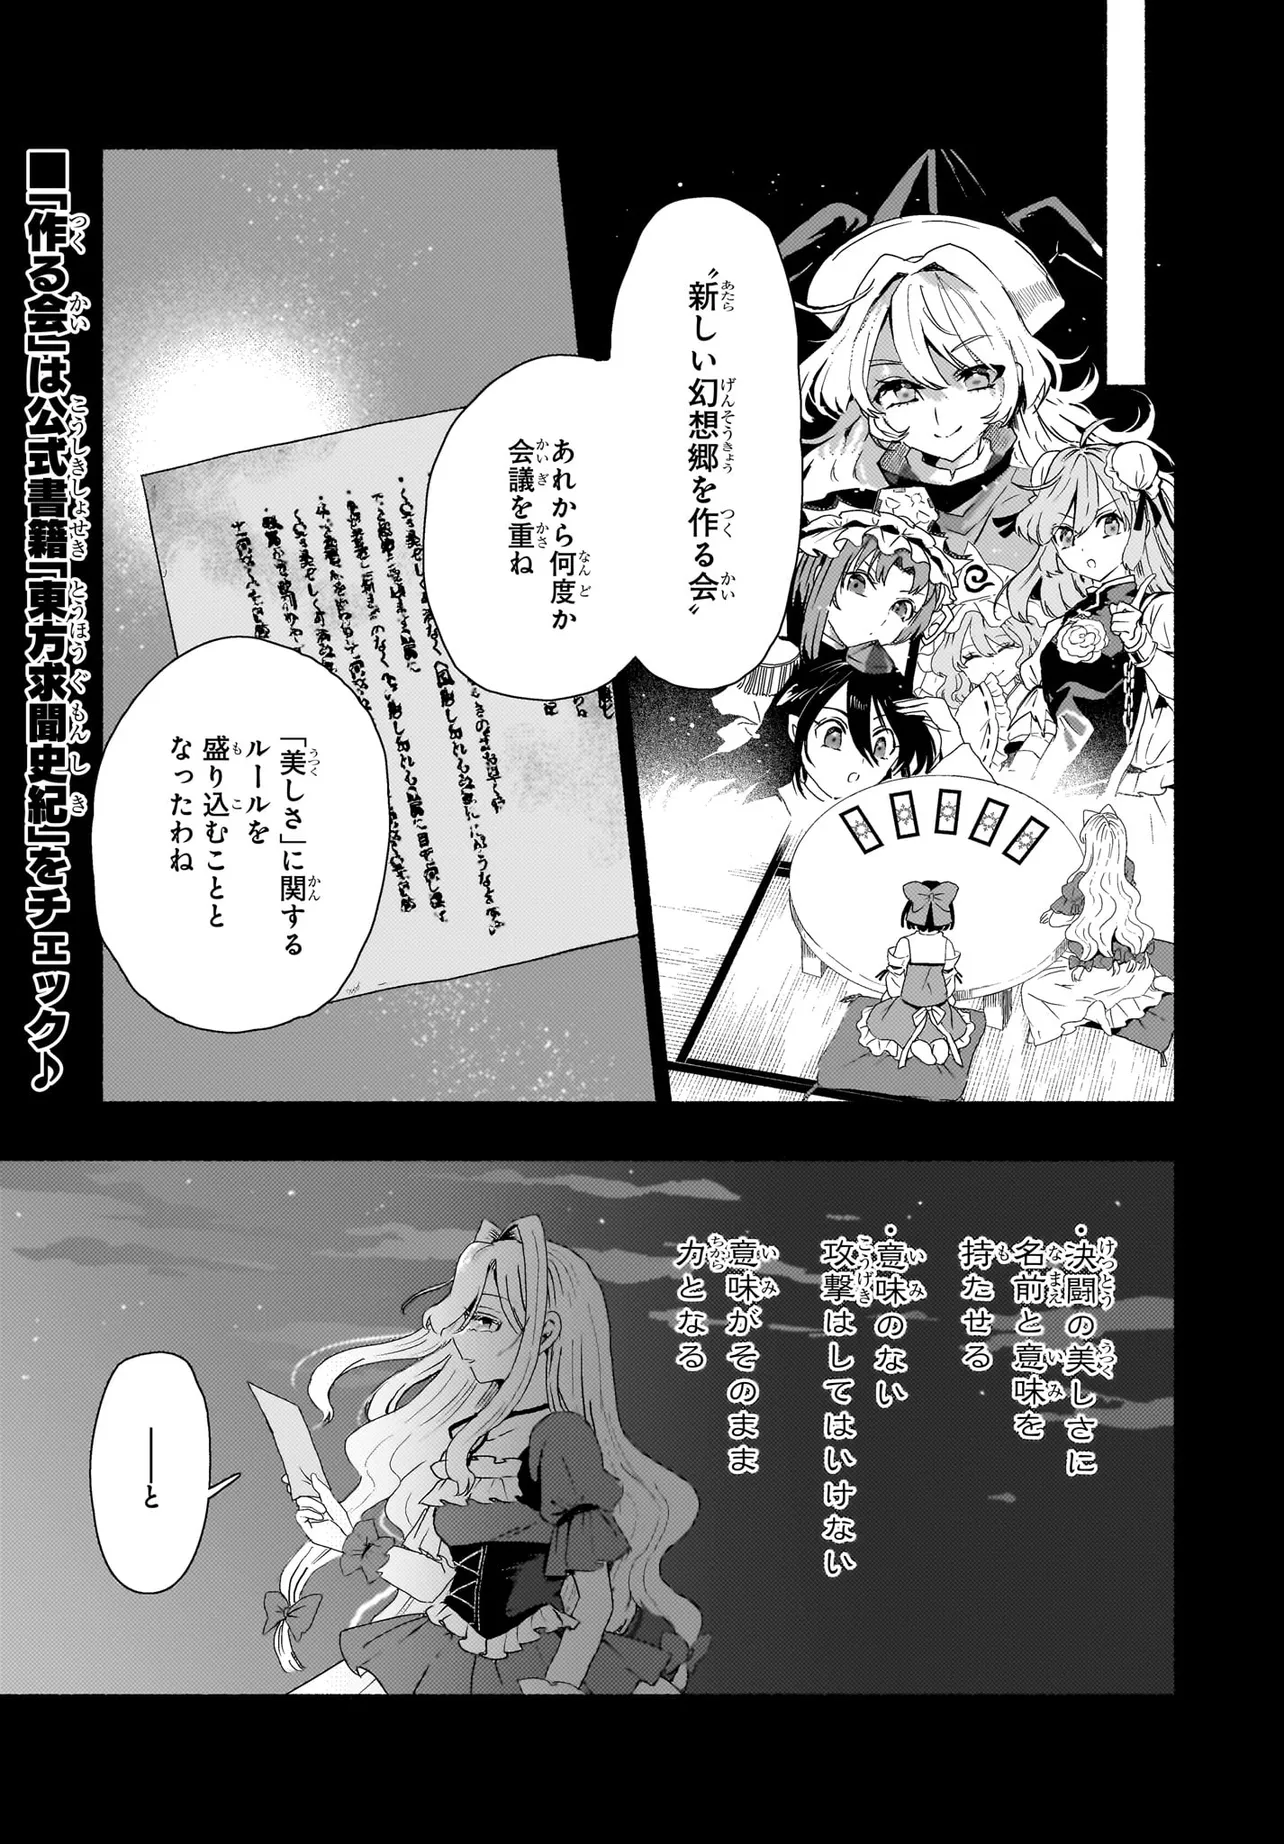 SPELL (AZUMA Aya) - Chapter 5 - Page 2